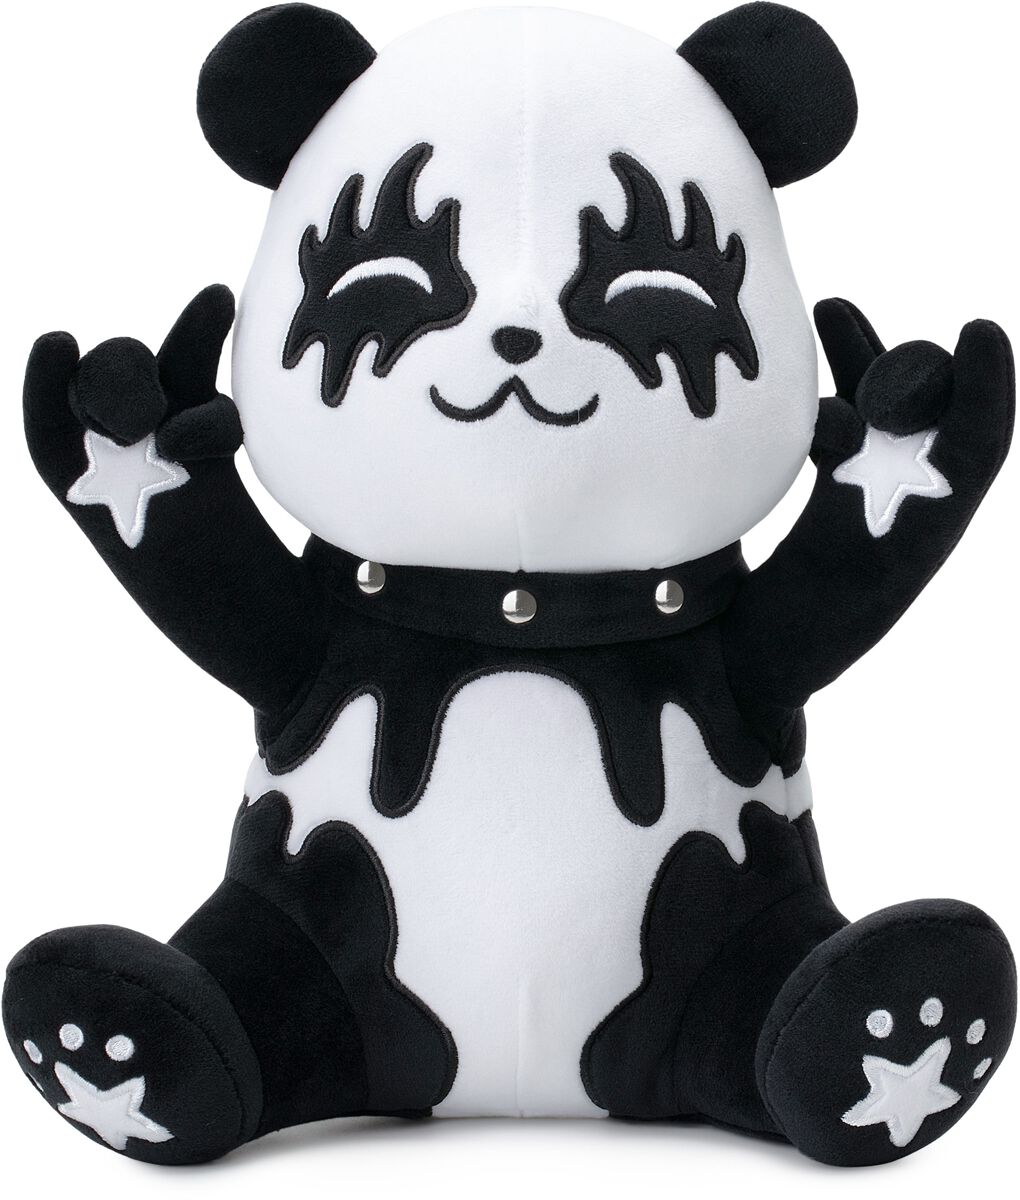 Corimori Tin der Metal-Panda Plüschfigur weiß schwarz